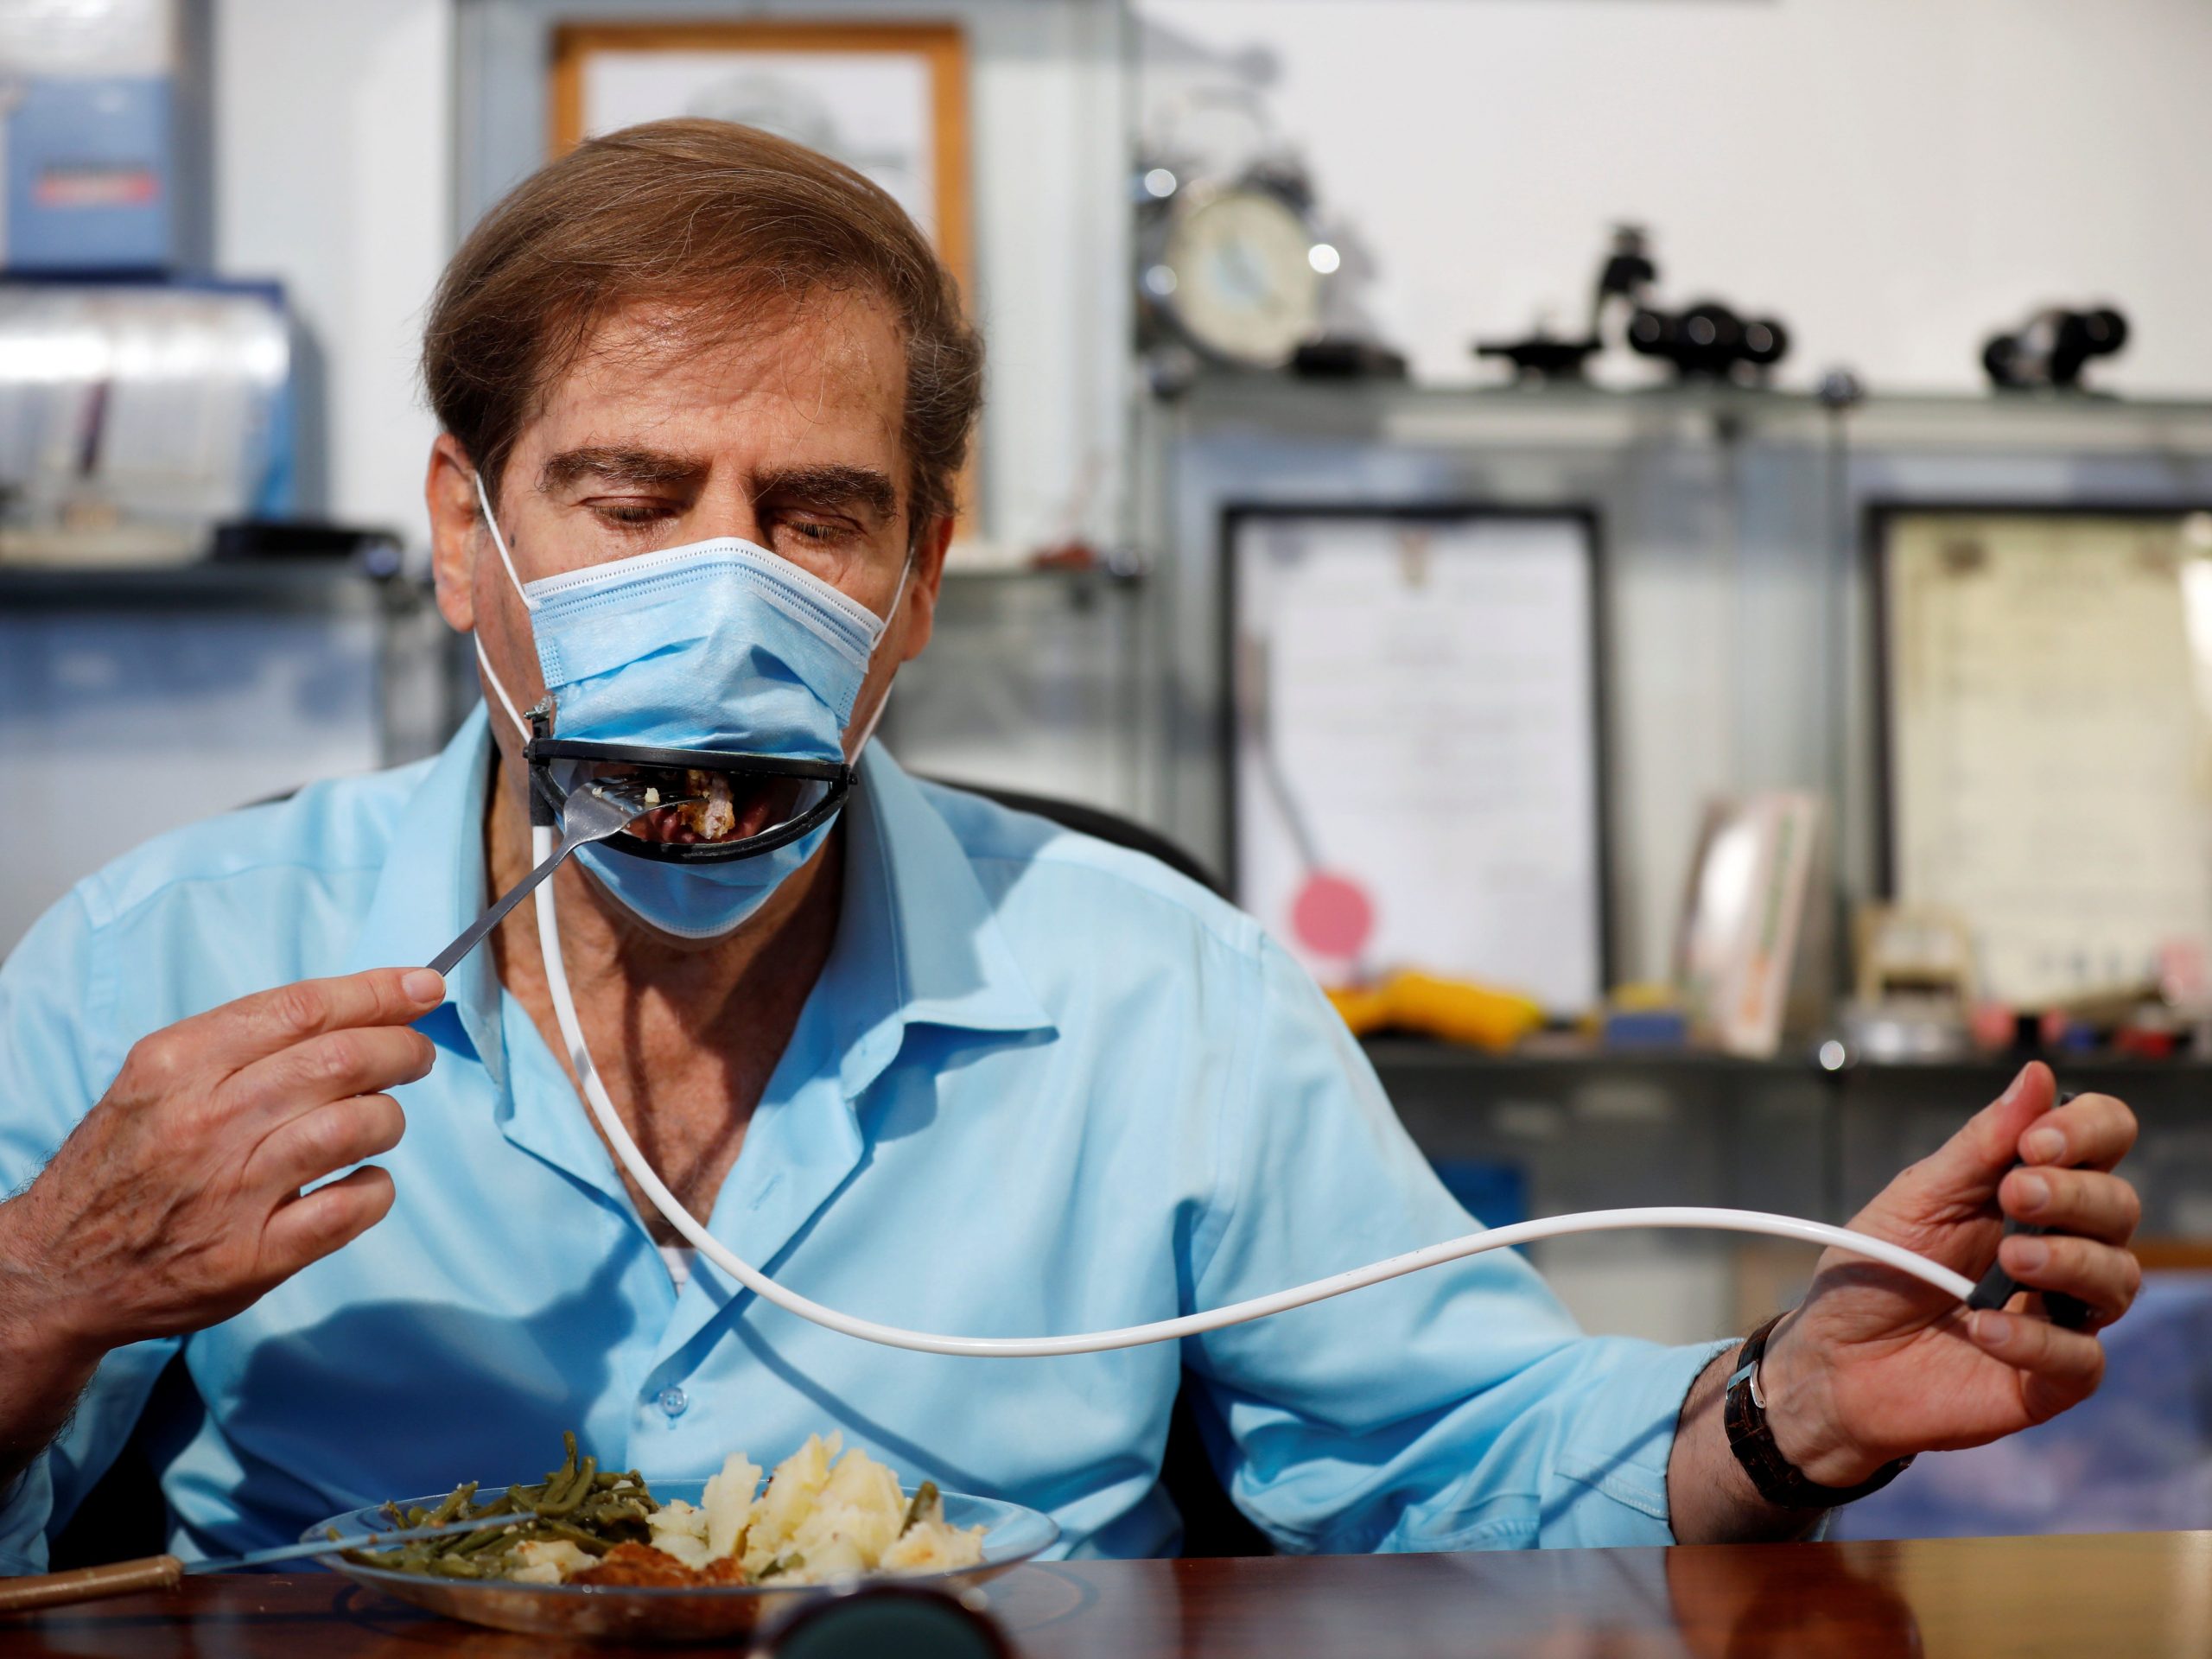 Een Israelisch bedrijf heeft een mondkapje ontworpen dat je niet af hoeft te doen om te eten.